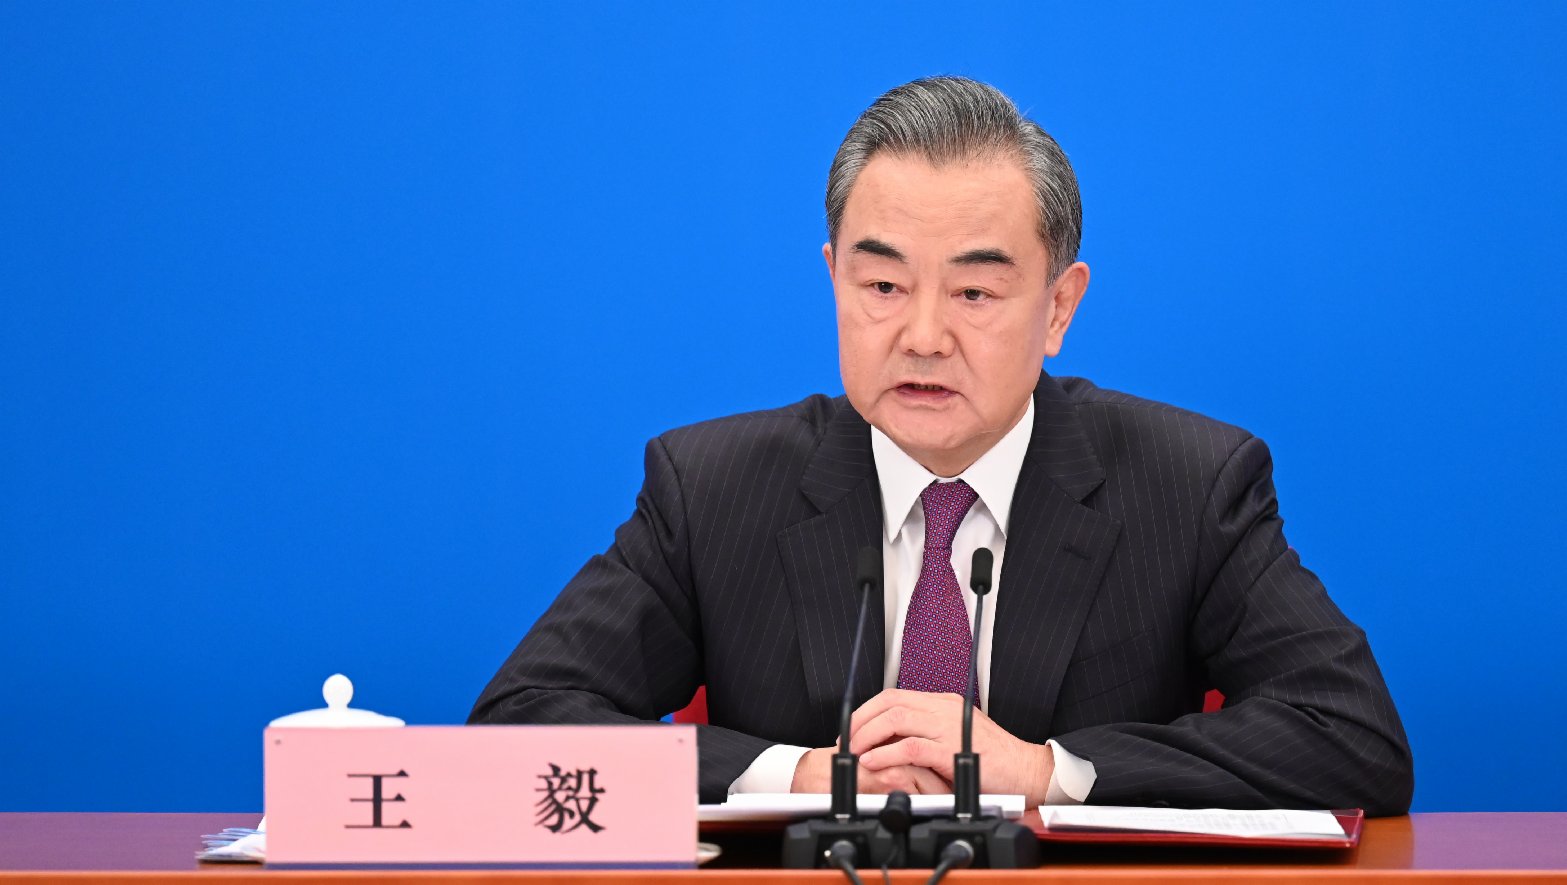 王毅:中國政府在台灣問題上沒有妥協餘地